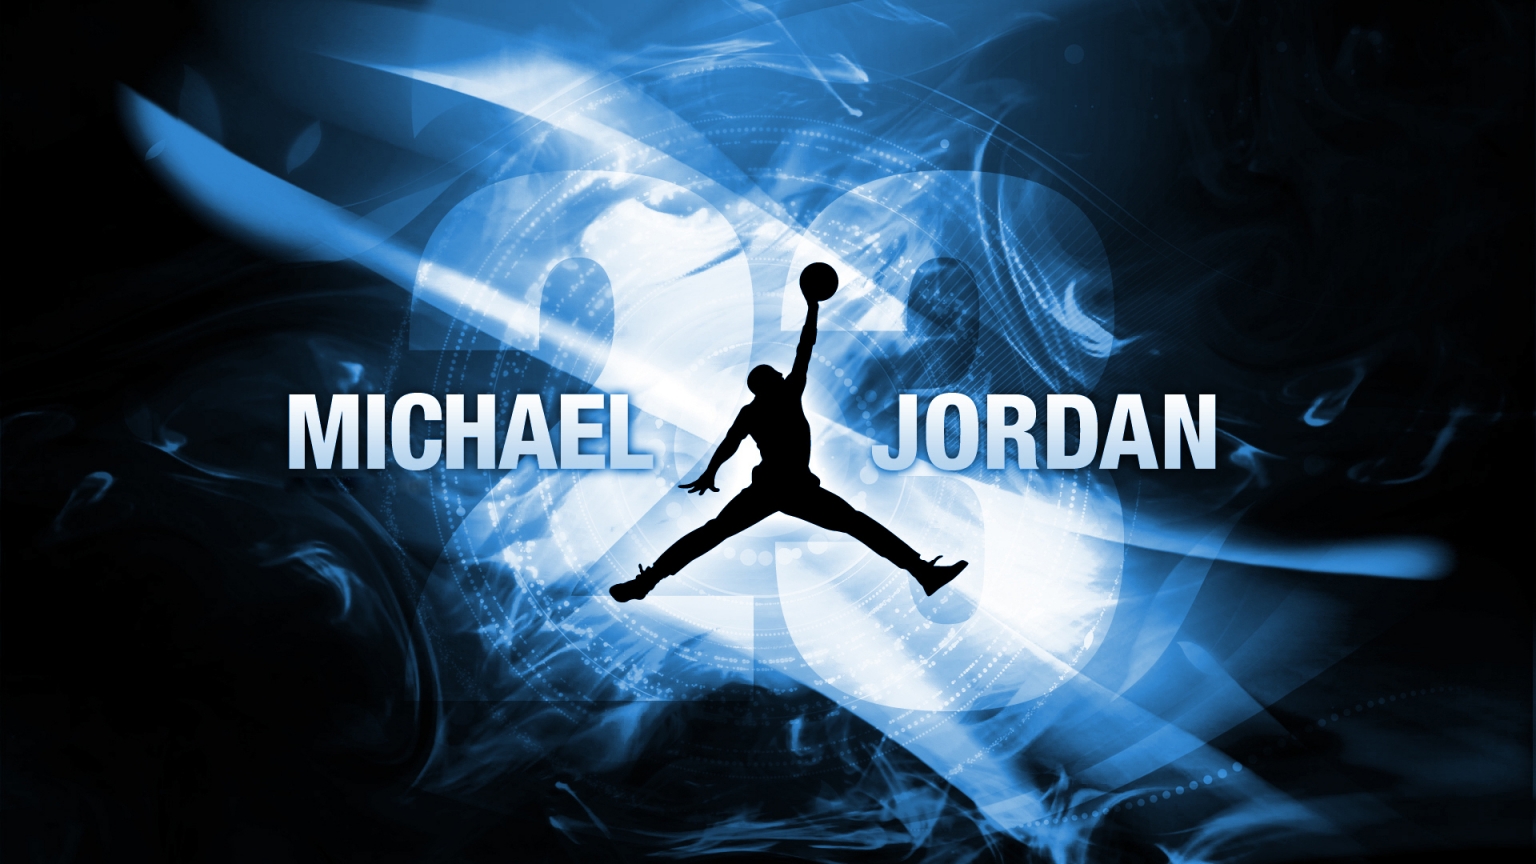 Michael Jordan for 1536 x 864 HDTV resolution